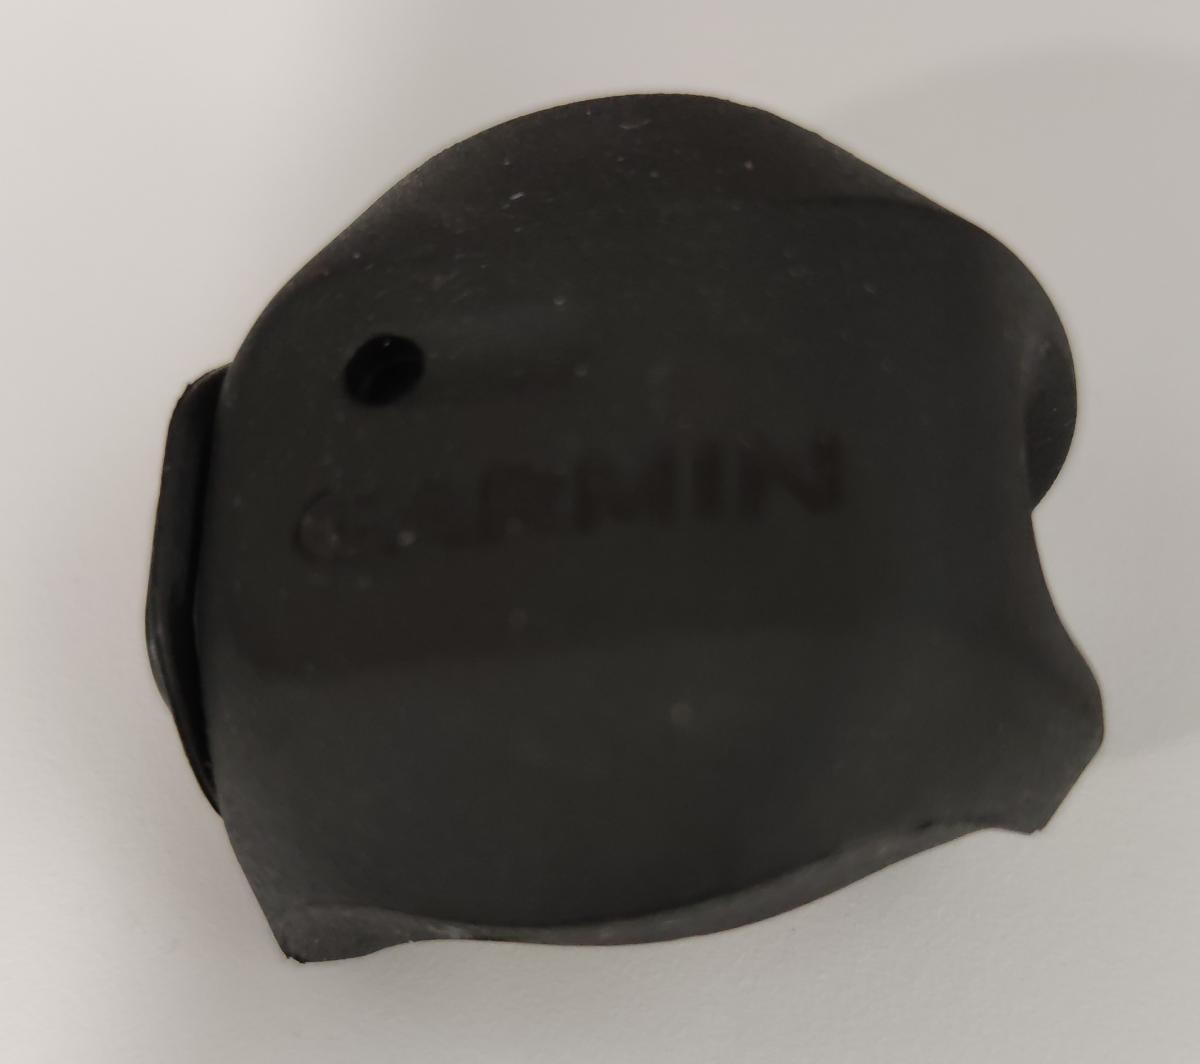 Imagen que muestra al sensor de velocidad de la marca Garmin